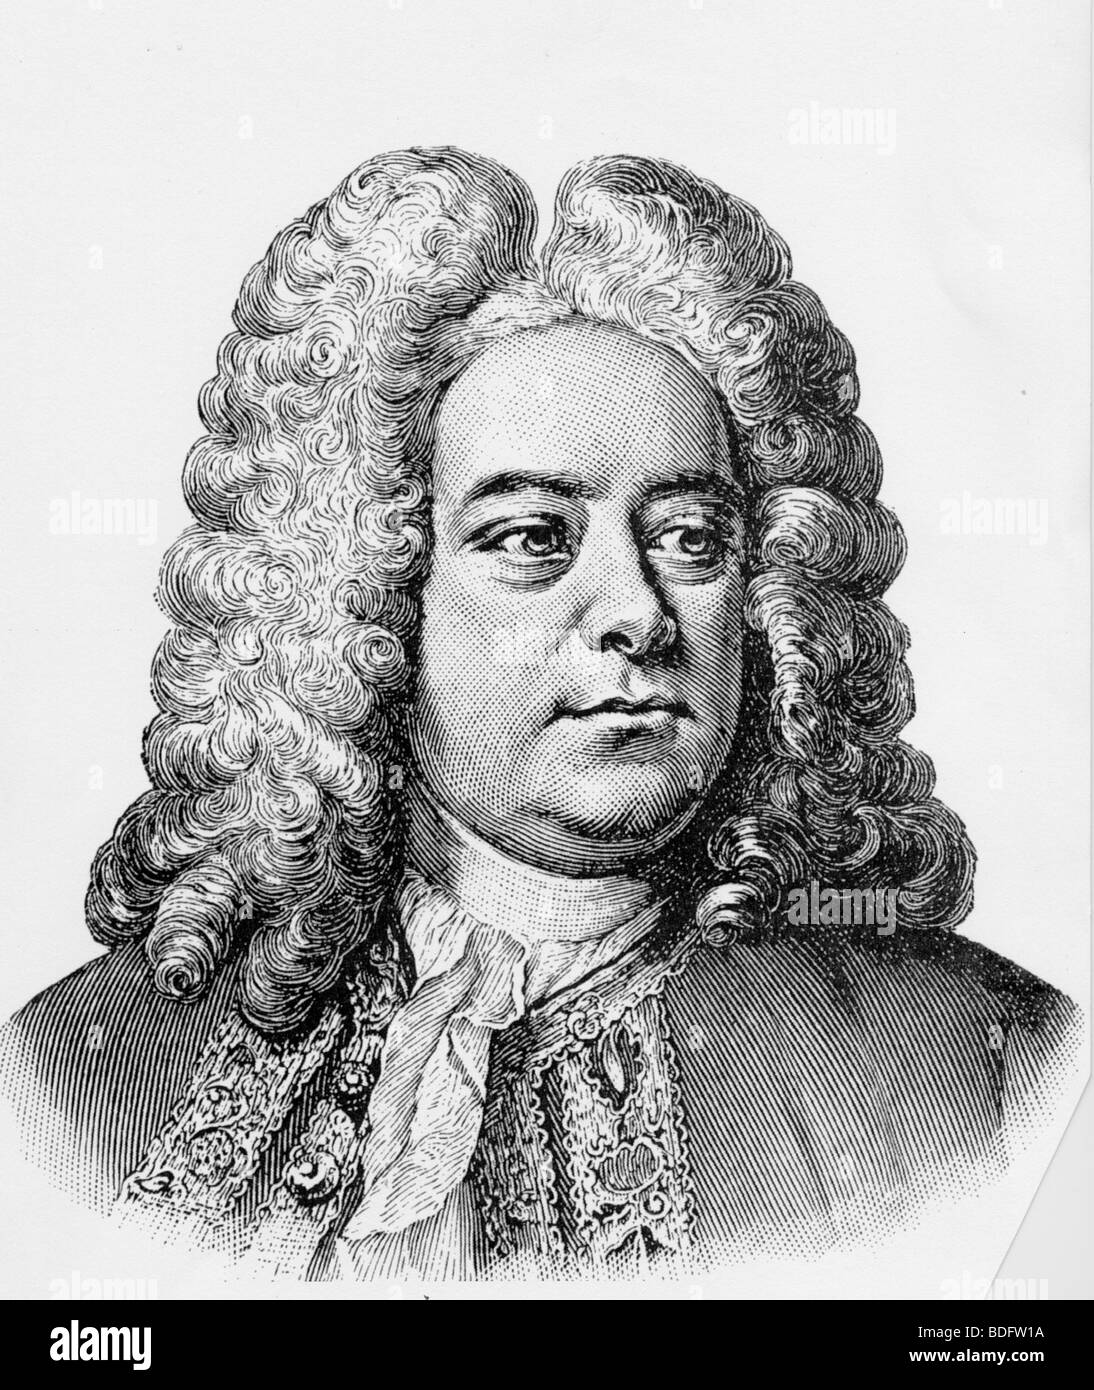 GEORGE FREDERICK HANDEL - compositor inglés nacido en Alemania 1685-1759 Foto de stock